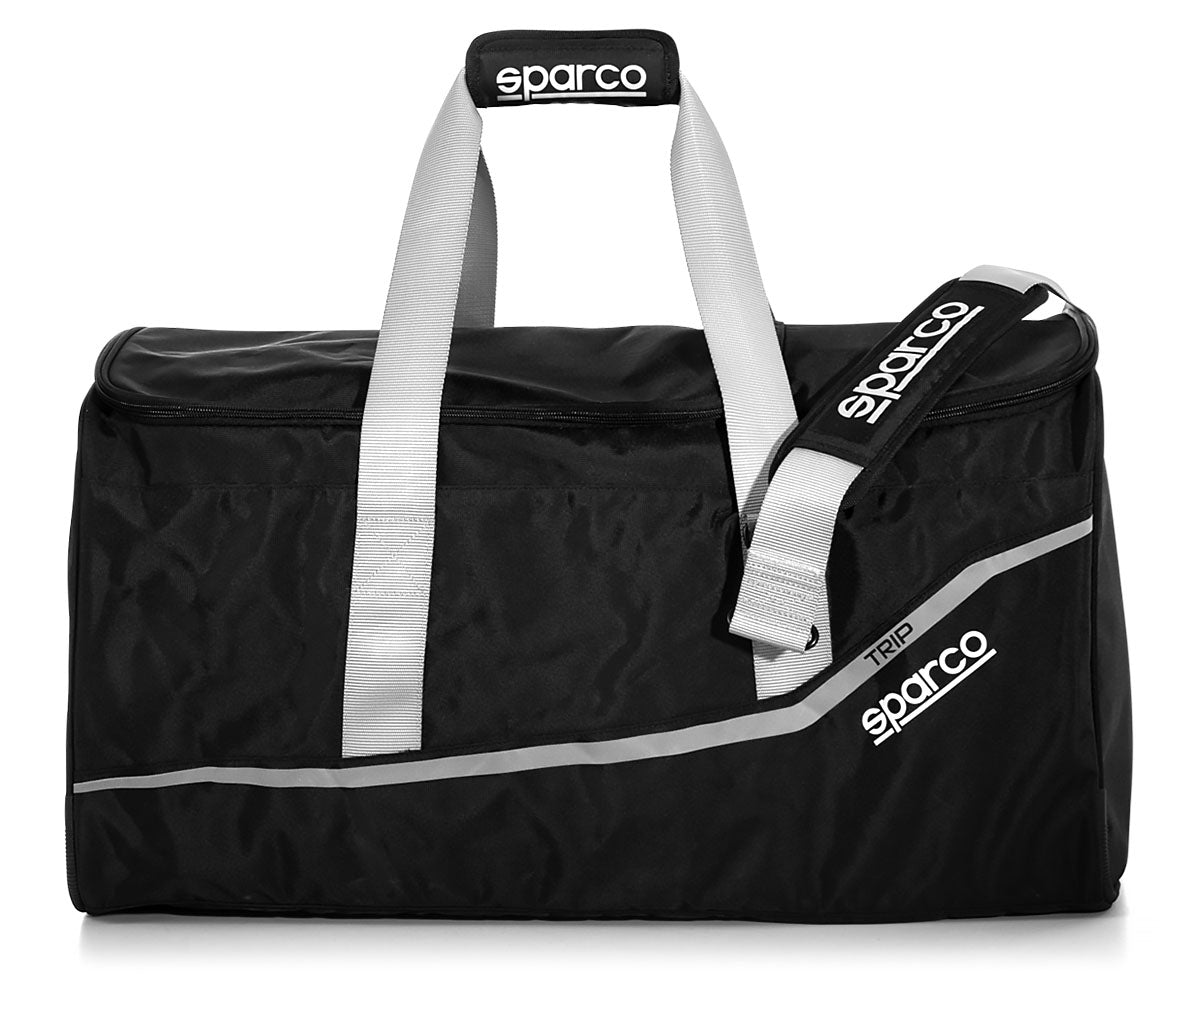 Sparco Trip Gear Bag